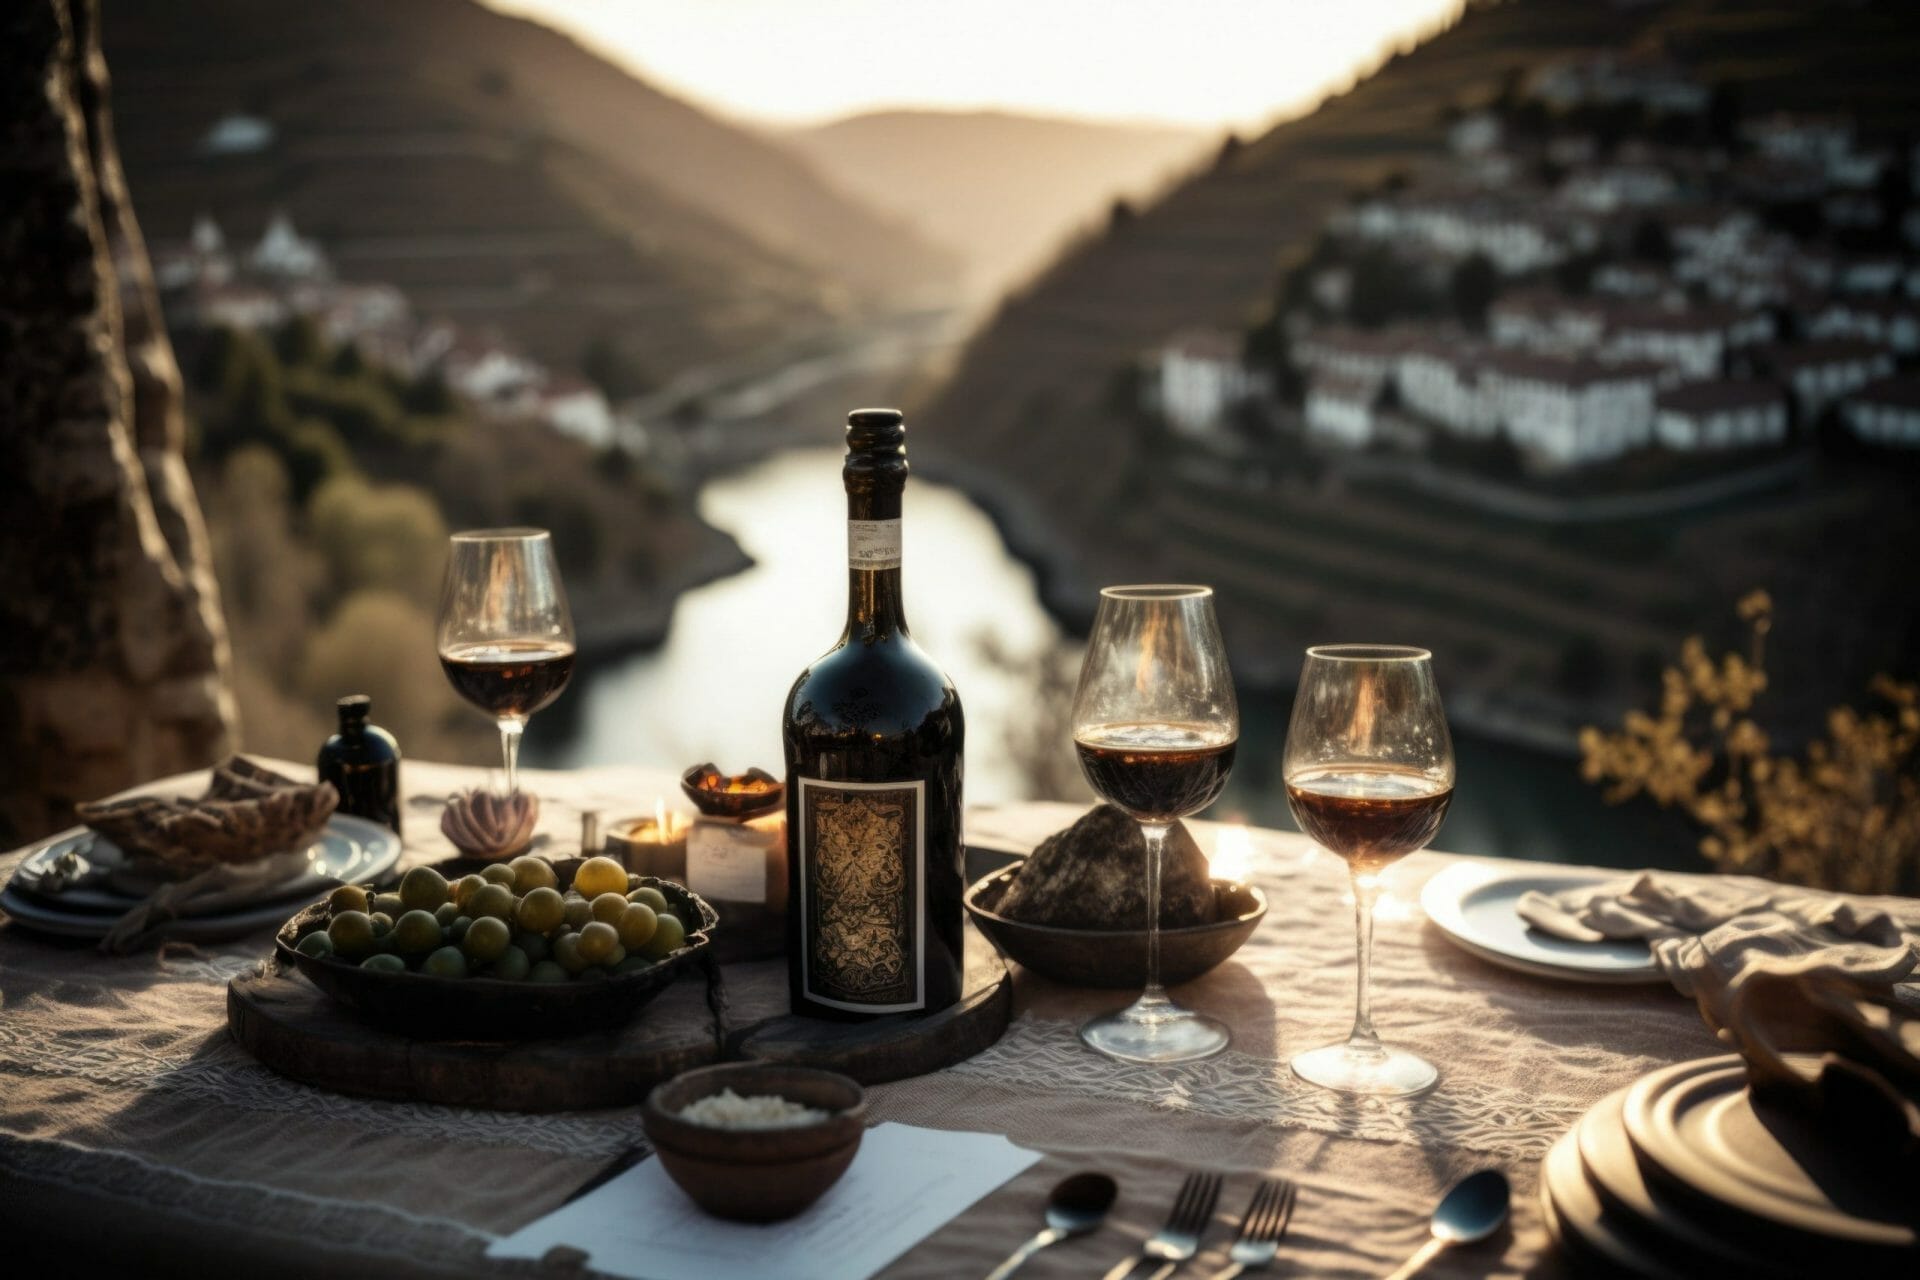 Una impresionante disposición de mesa que presenta una botella de vino de Oporto de añada.